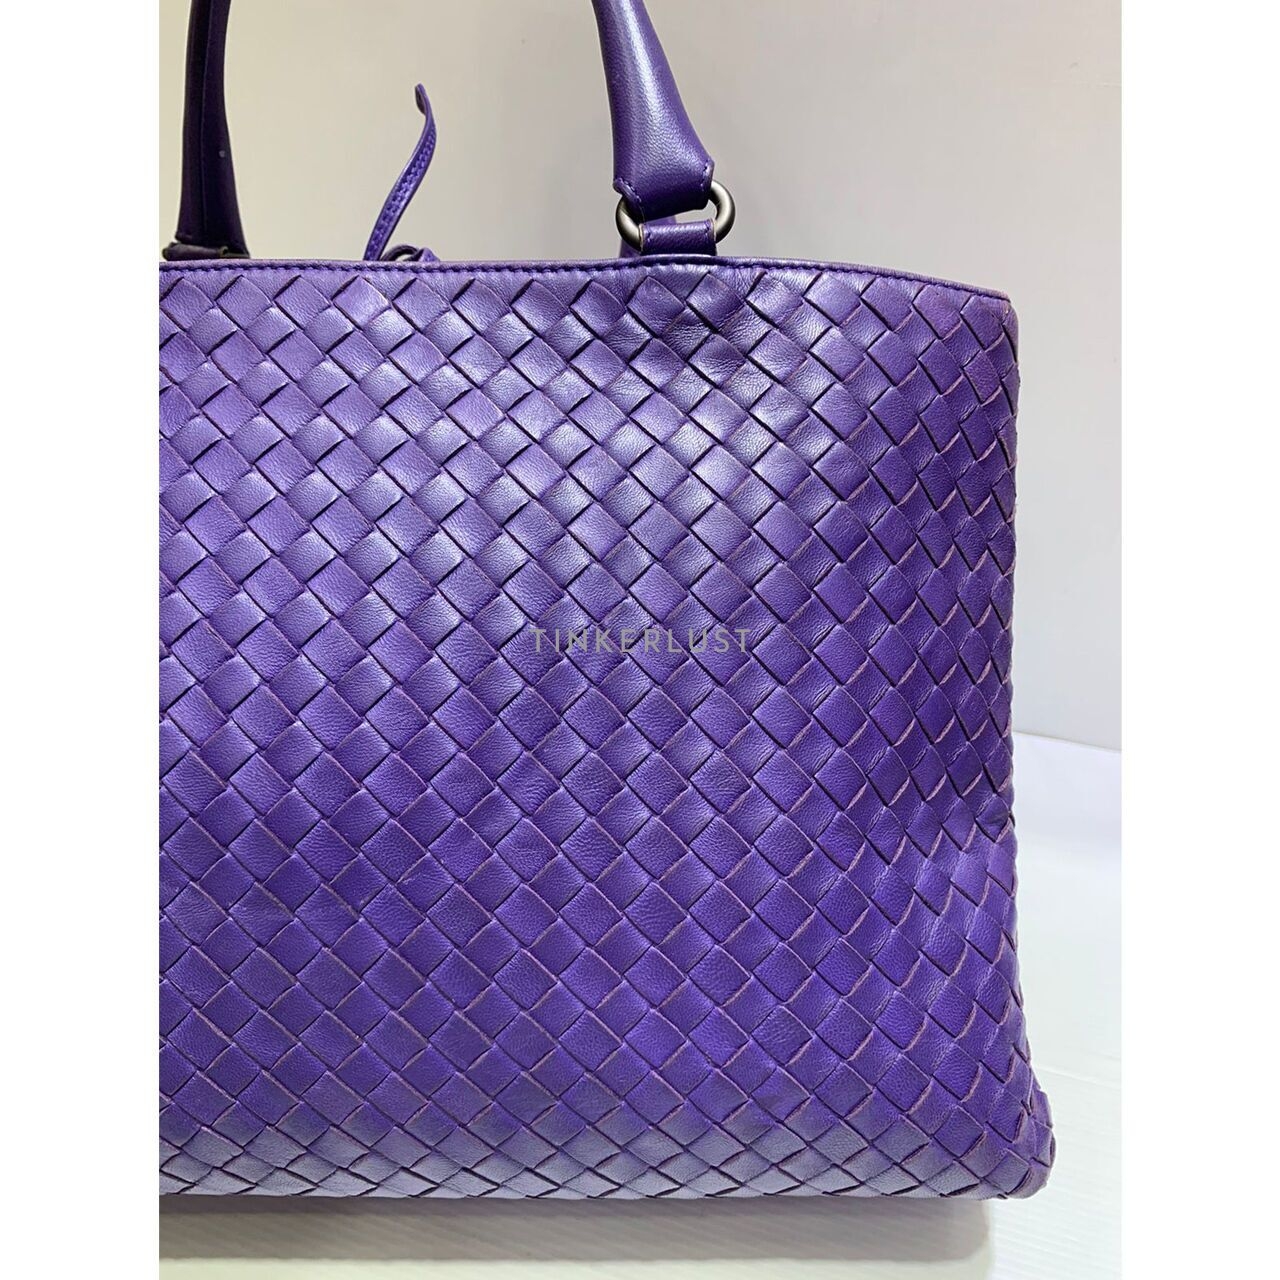 Bottega Veneta Intrecciato Leather Purple 2009 Handbag